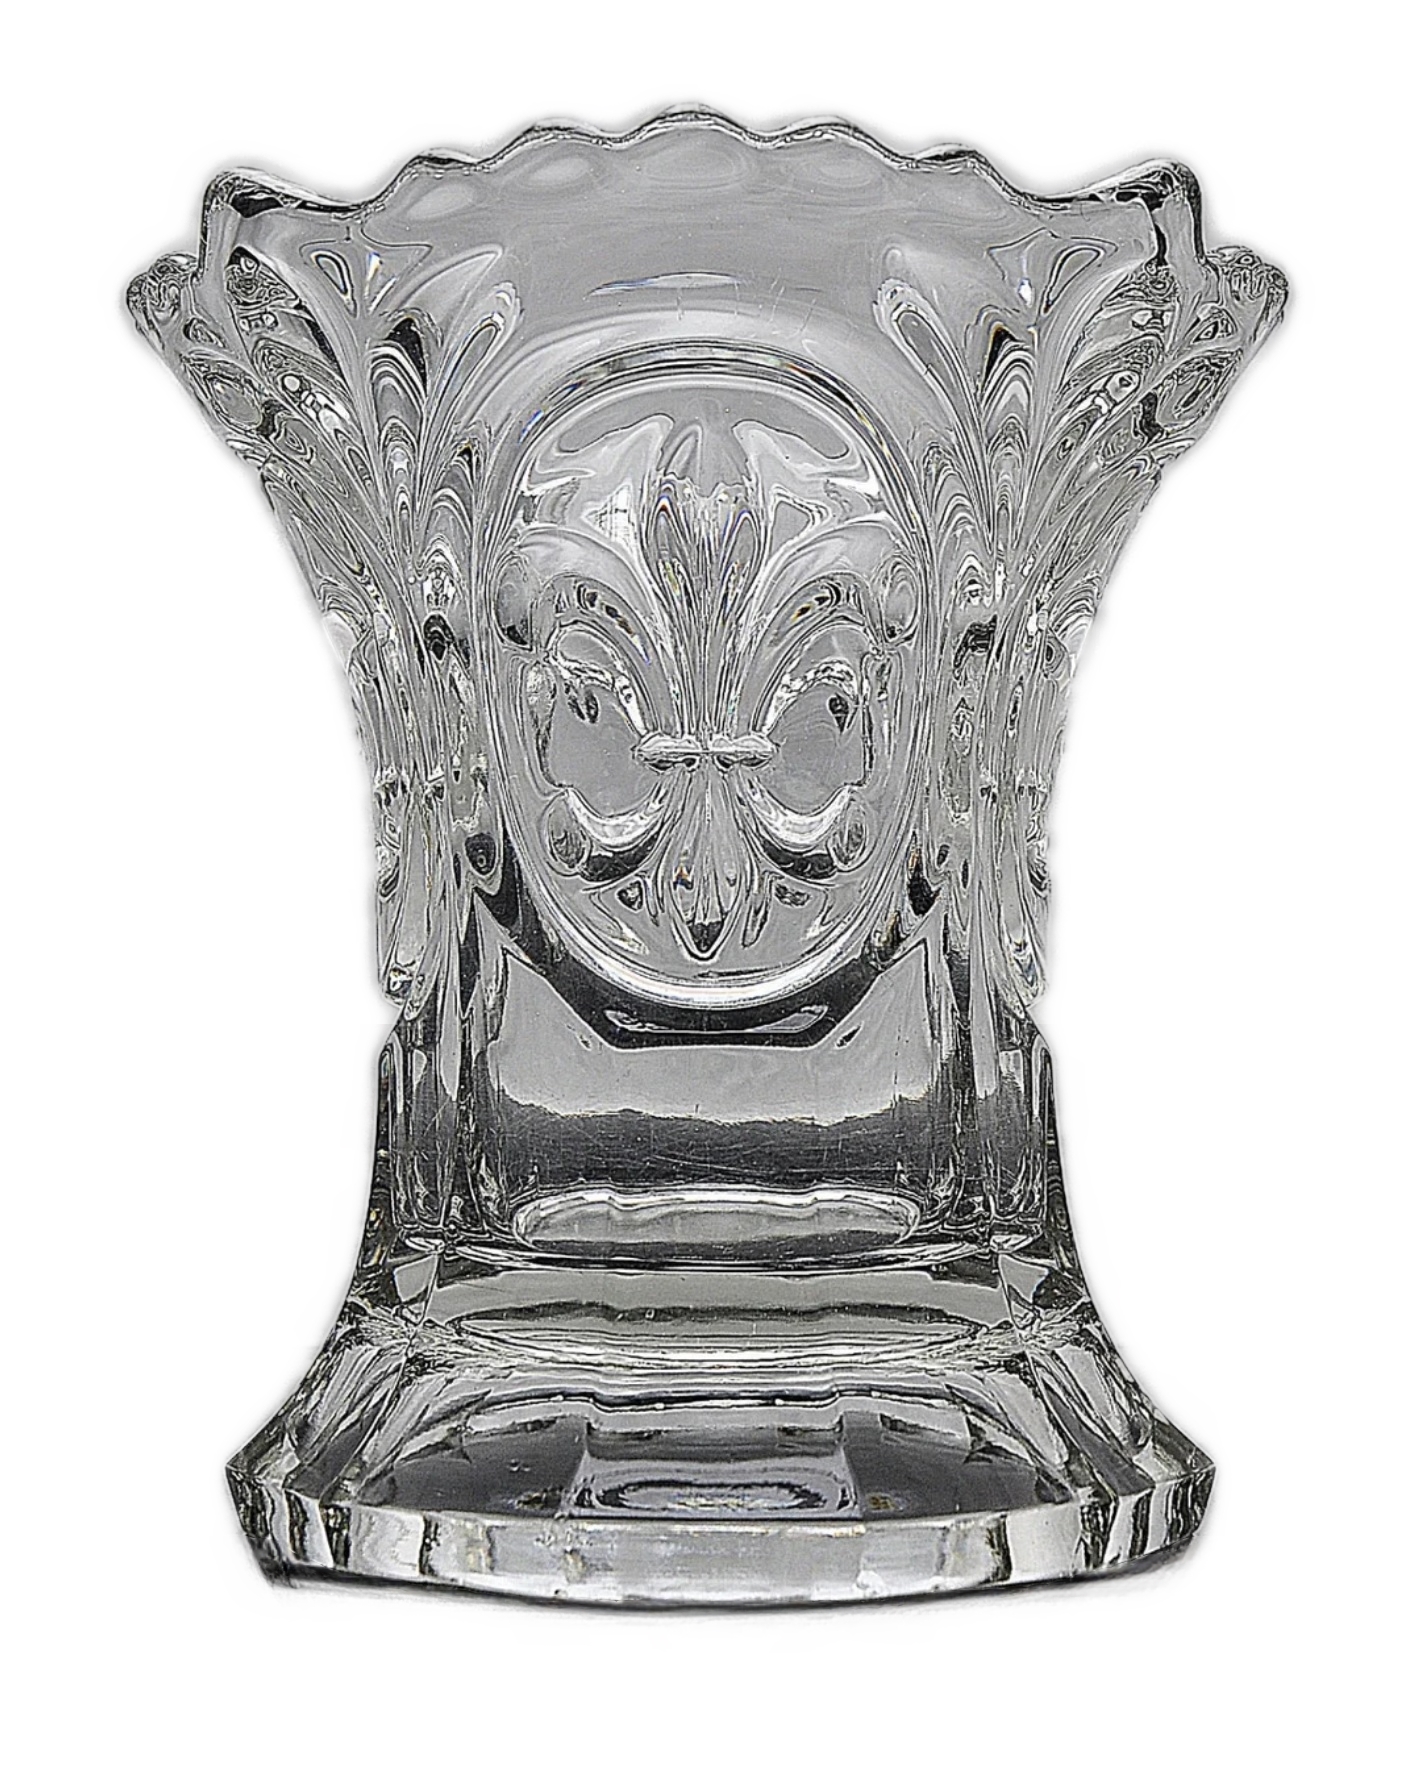 Inwald - 8194/160, Vase